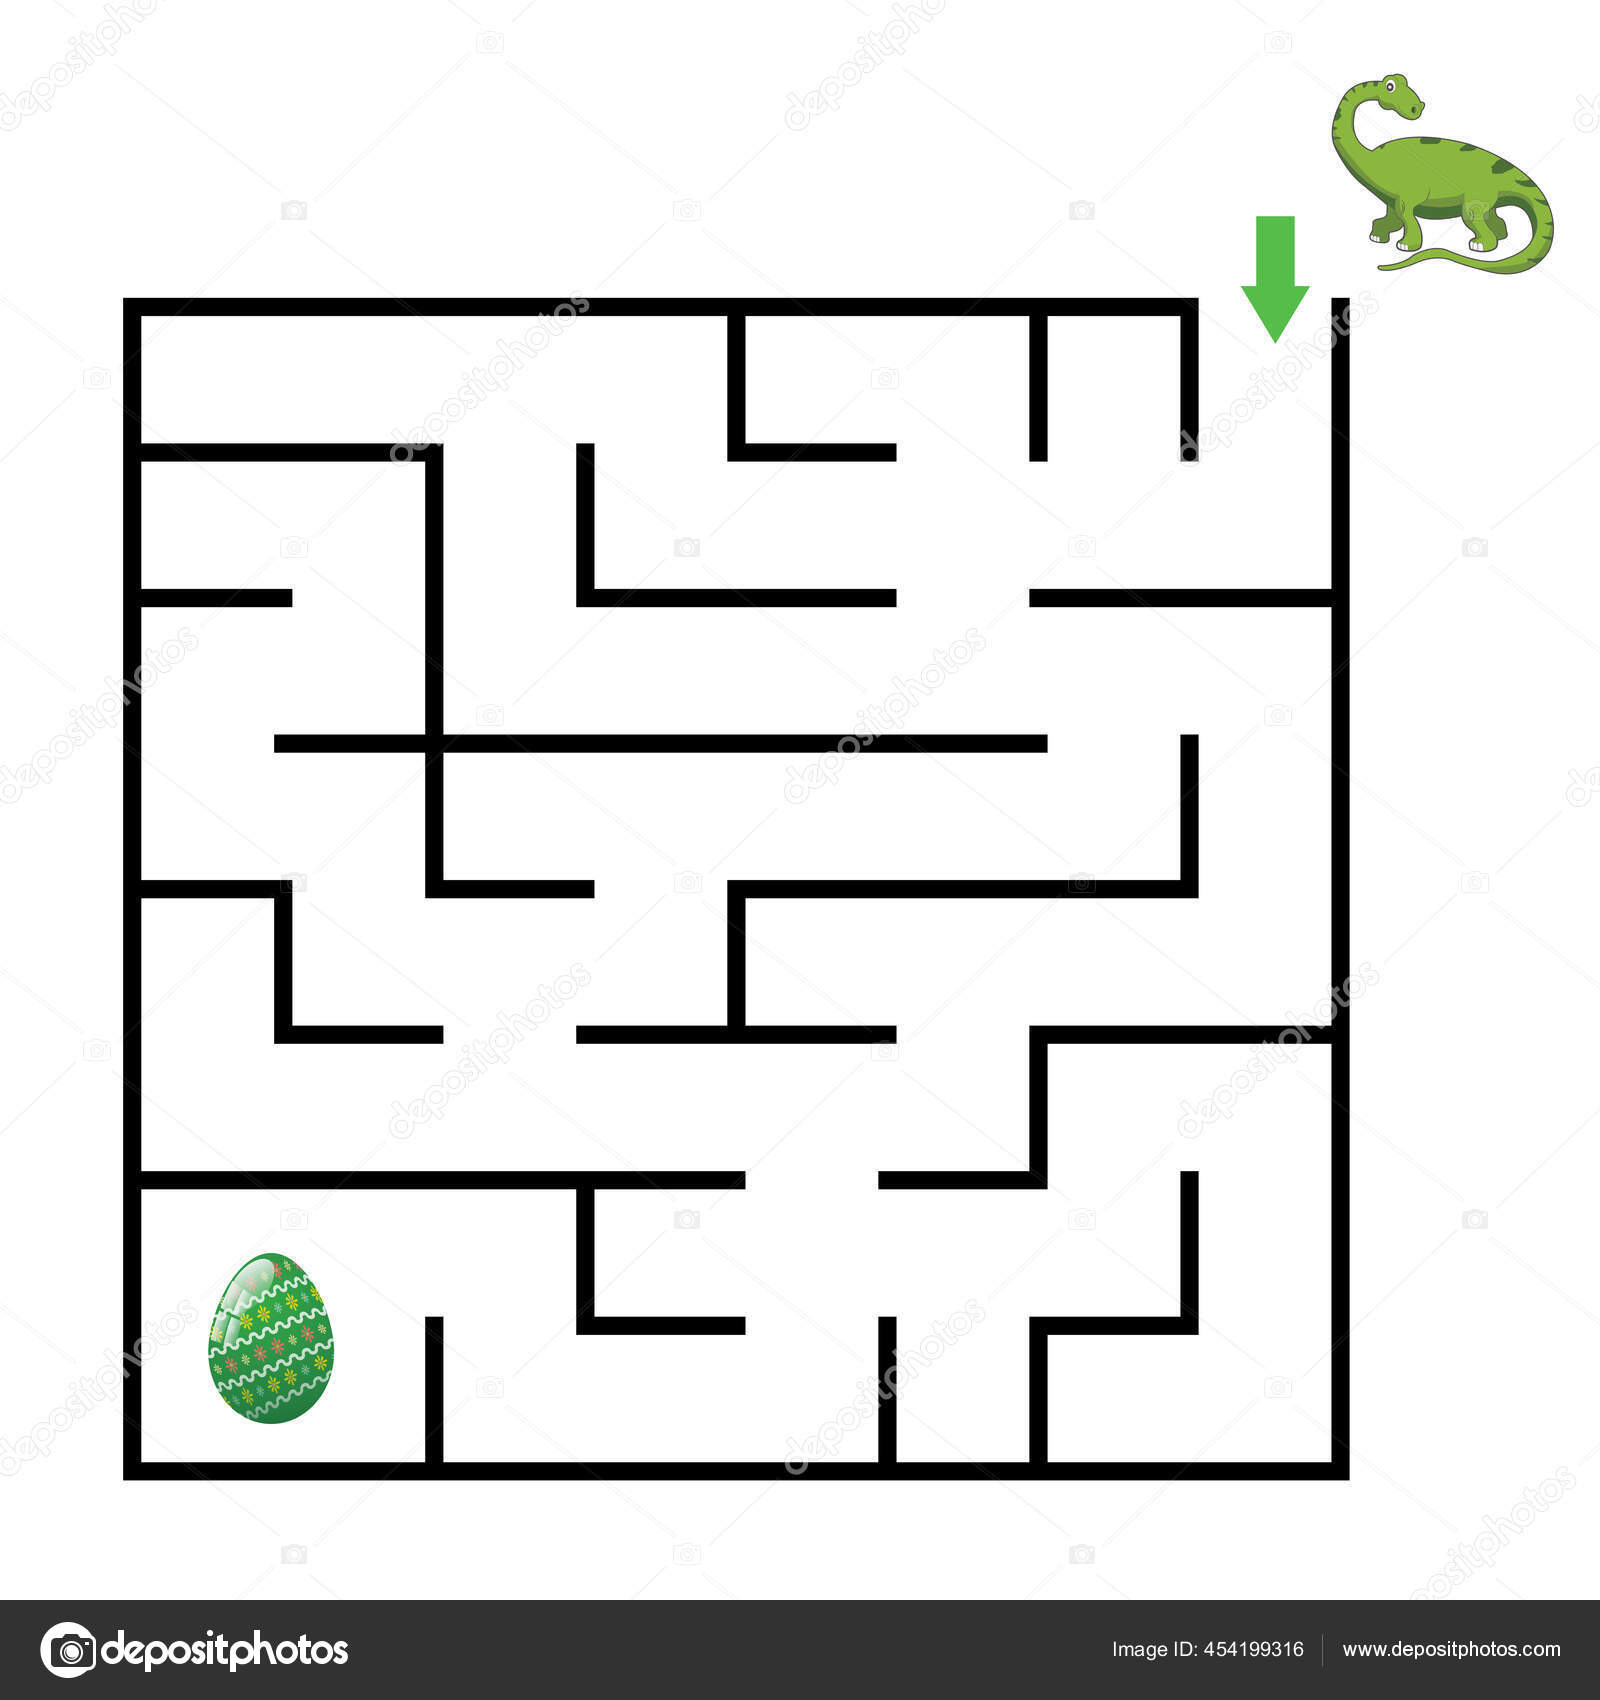 Dinossauros dos desenhos animados vector labirinto labirinto ou enigma infantil  jogo de quebra-cabeça lógico ou modelo de planilha de questionário de  educação ajuda dinossauro a chegar aos amigos